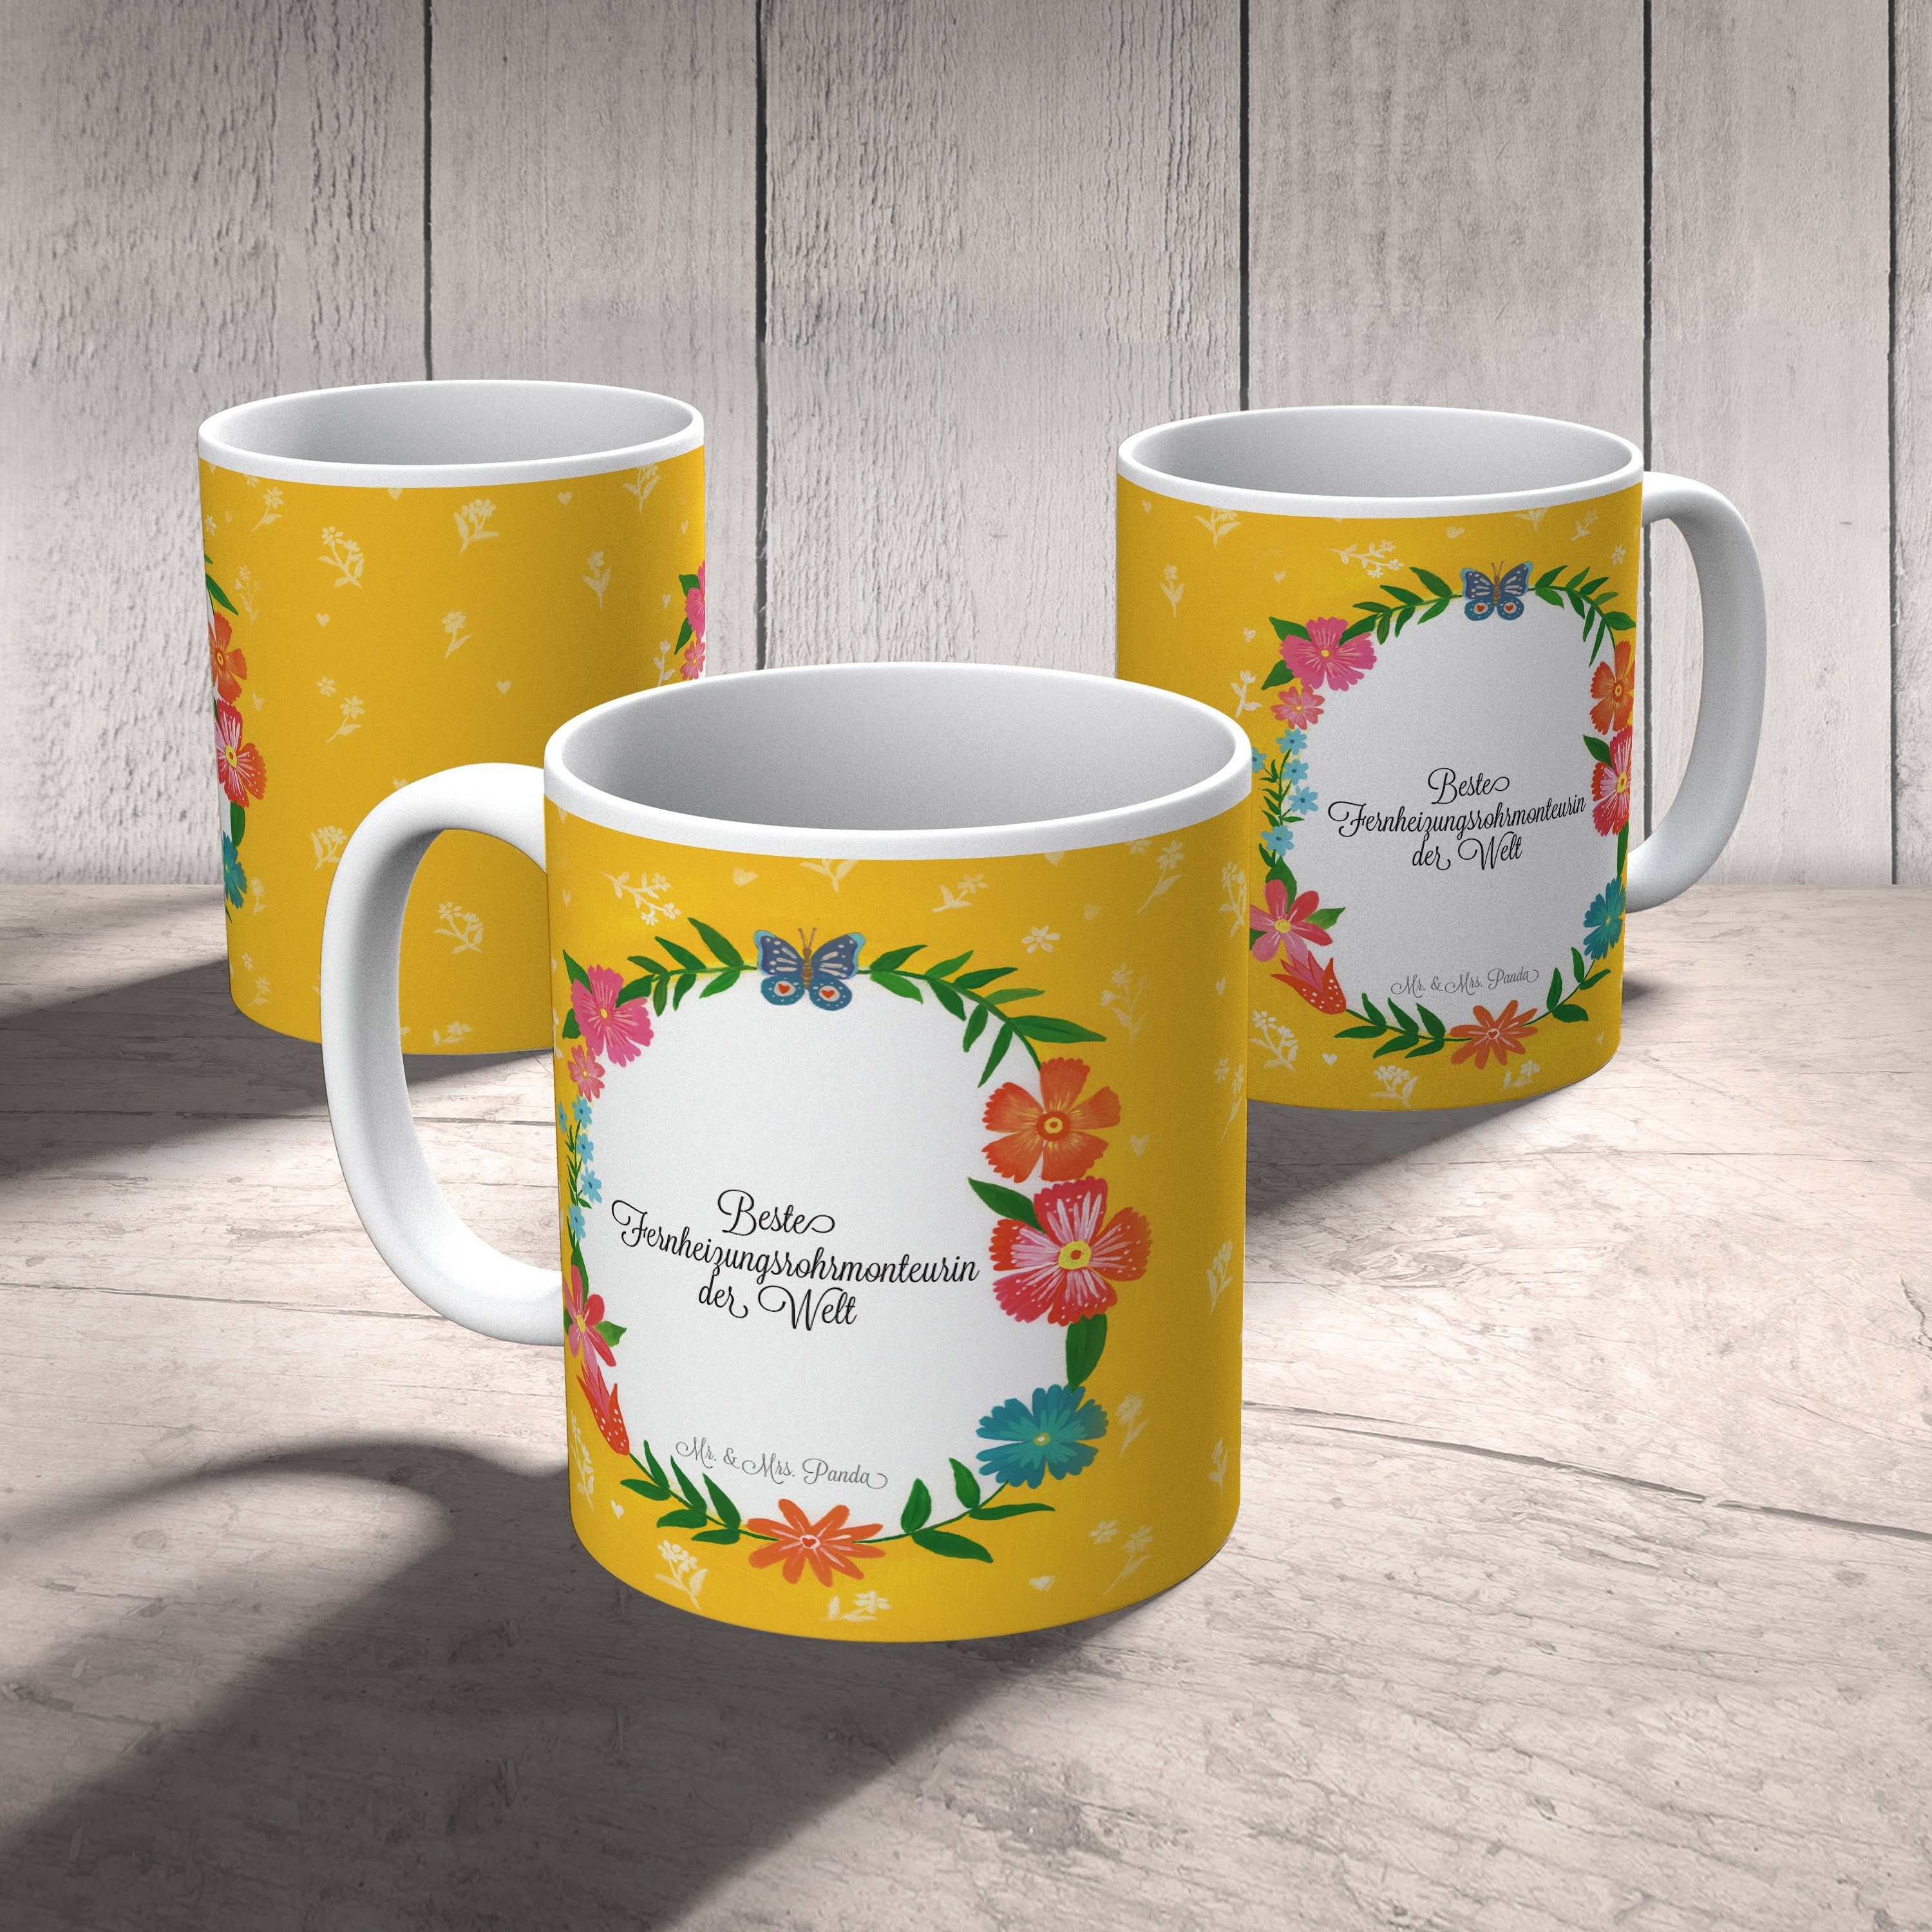 Mr. & - Geschenk, Panda Mrs. Abschied, Tasse Fernheizungsrohrmonteurin Büro Tasse, Kaffeetas, Keramik